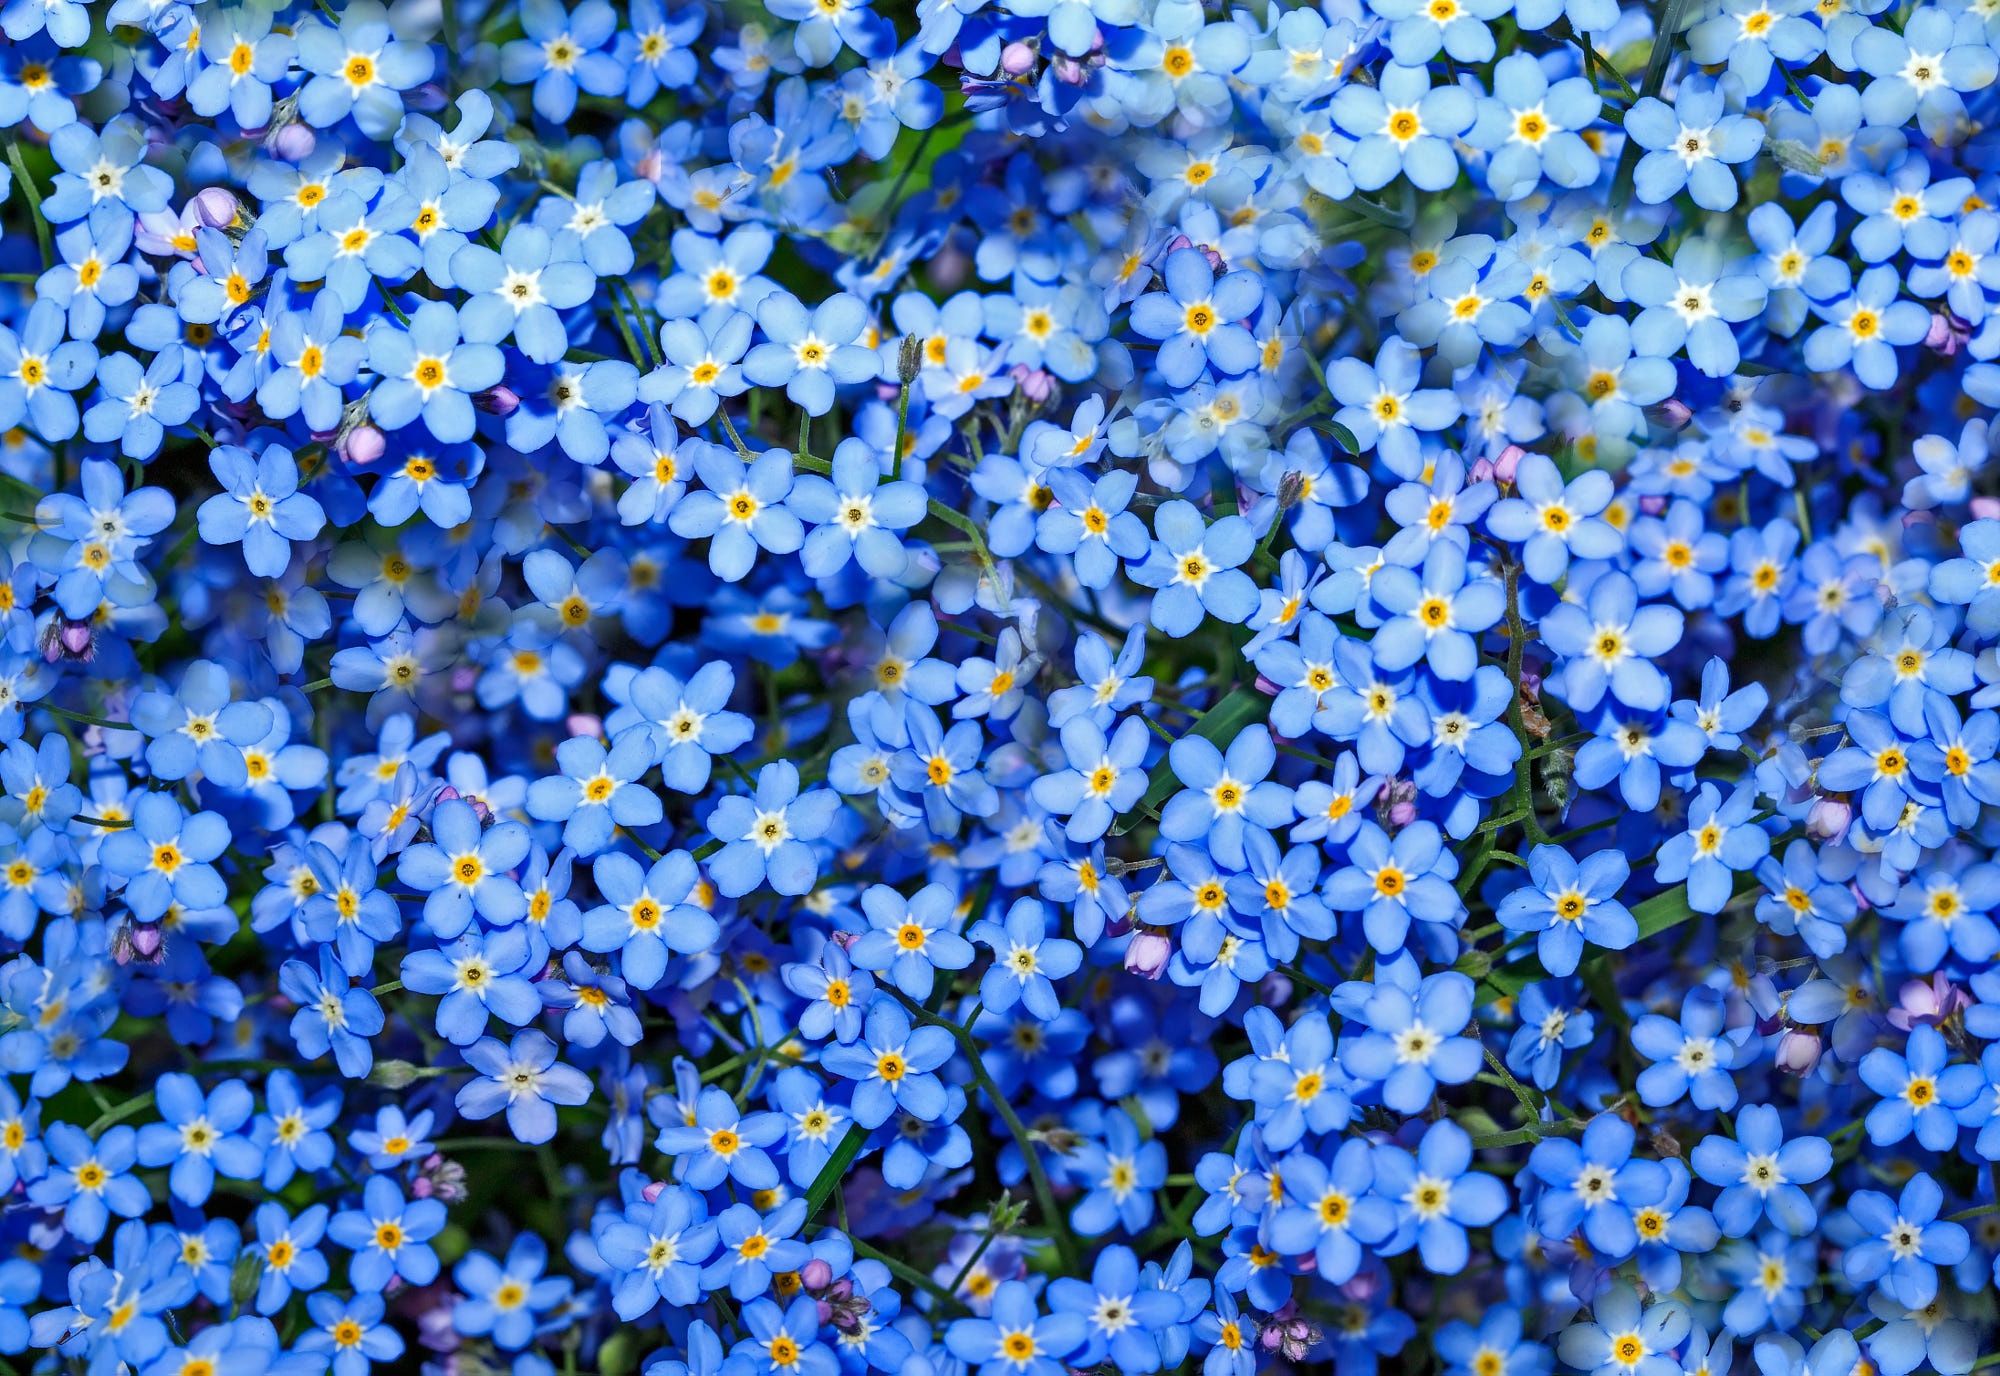 Фон незабудки. Незабудки. Весенние синие цветочки мелкие. Незабудки фон.